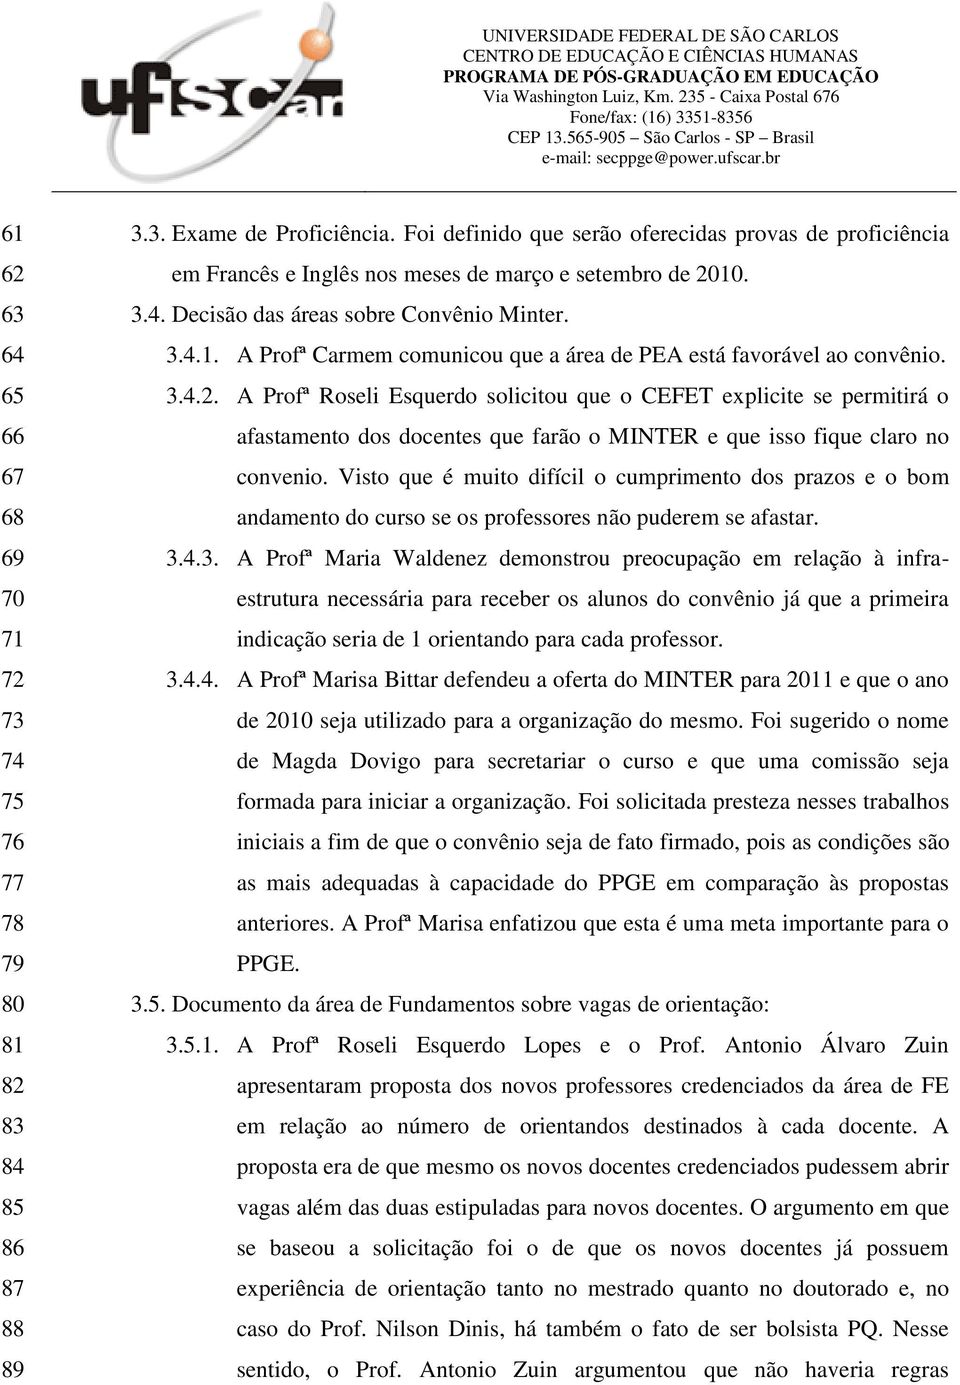 3.4.2. A Profª Roseli Esquerdo solicitou que o CEFET explicite se permitirá o afastamento dos docentes que farão o MINTER e que isso fique claro no convenio.